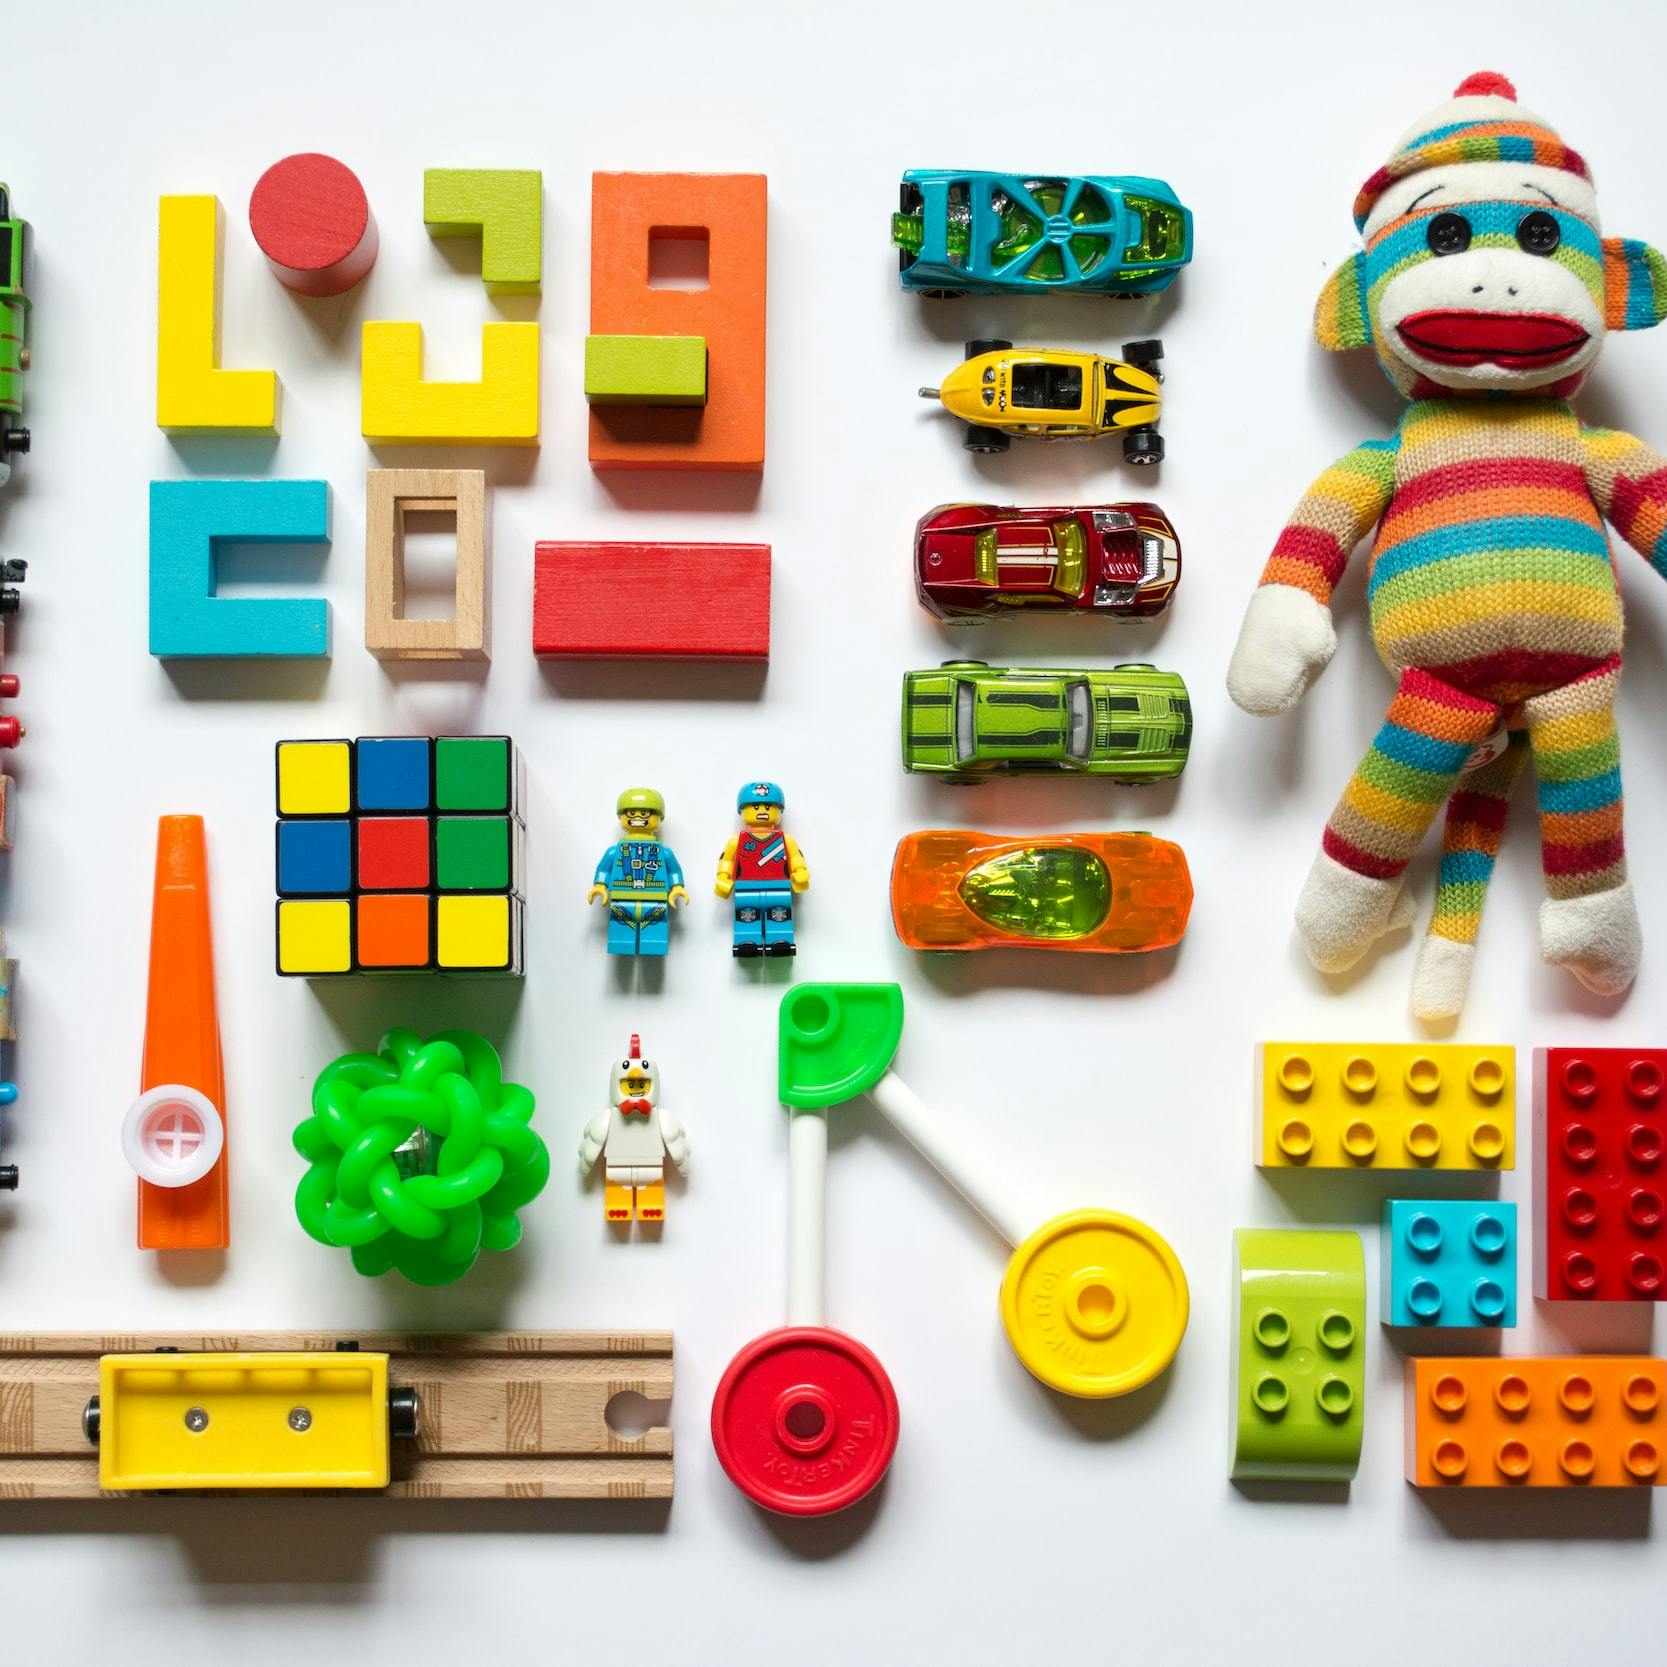 Serie di giocattoli colorati (trenini, rotaie, lego, macchinine, cubo di Rubik, scimmietta di pezza) disposti in griglia in perfetto ordine.